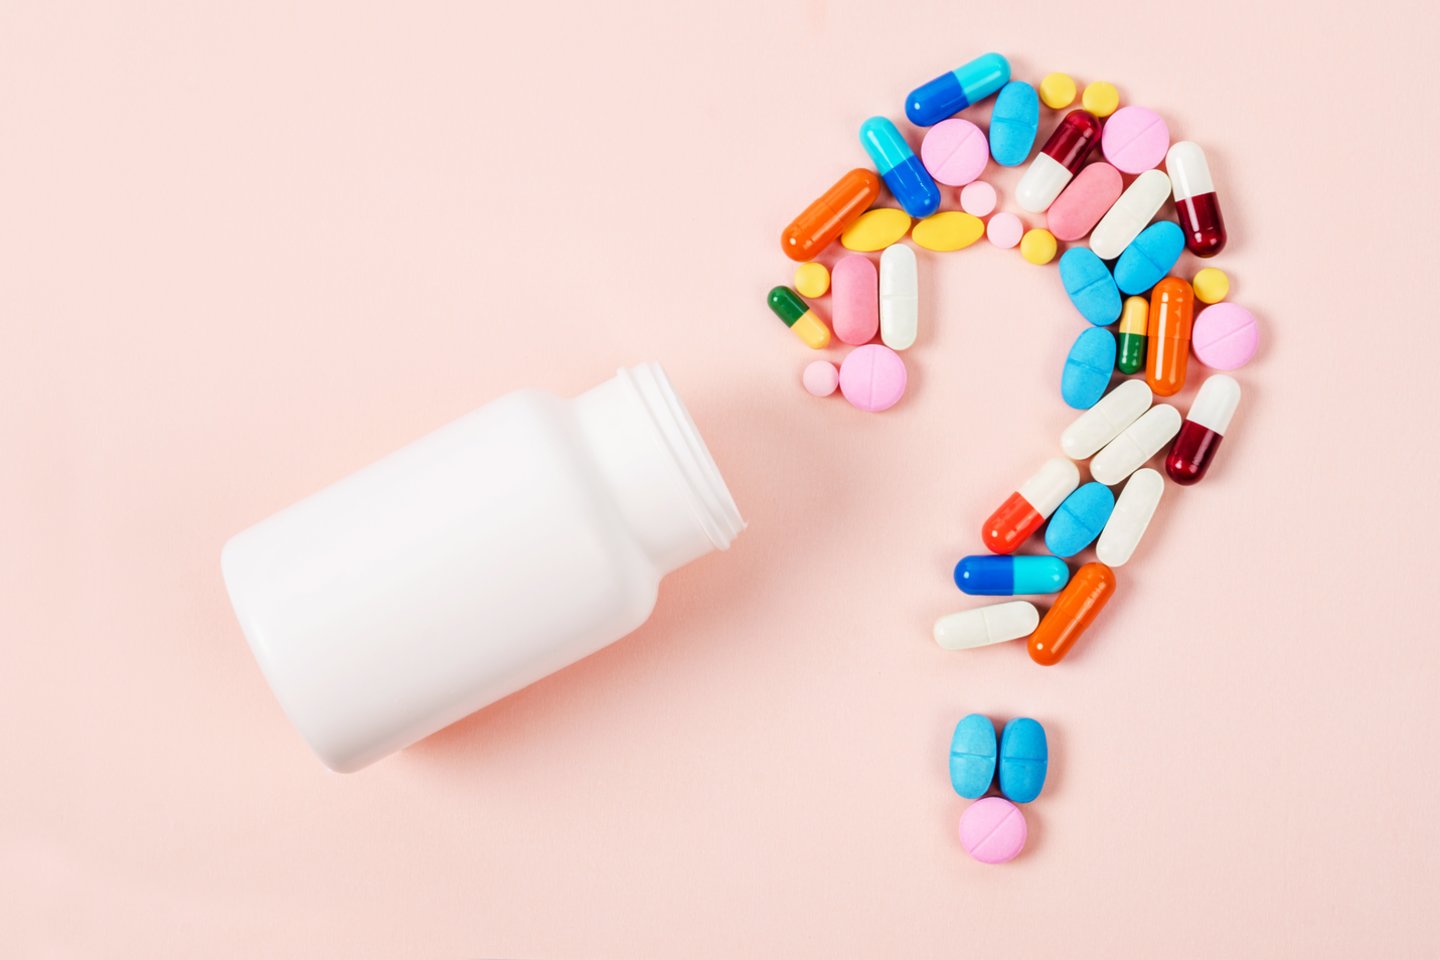  Vaistų ir vitaminų pirkimas internetu: kaip pažinti apgaulingas svetaines ir reklamas?<br> 123rf.com nuotr.